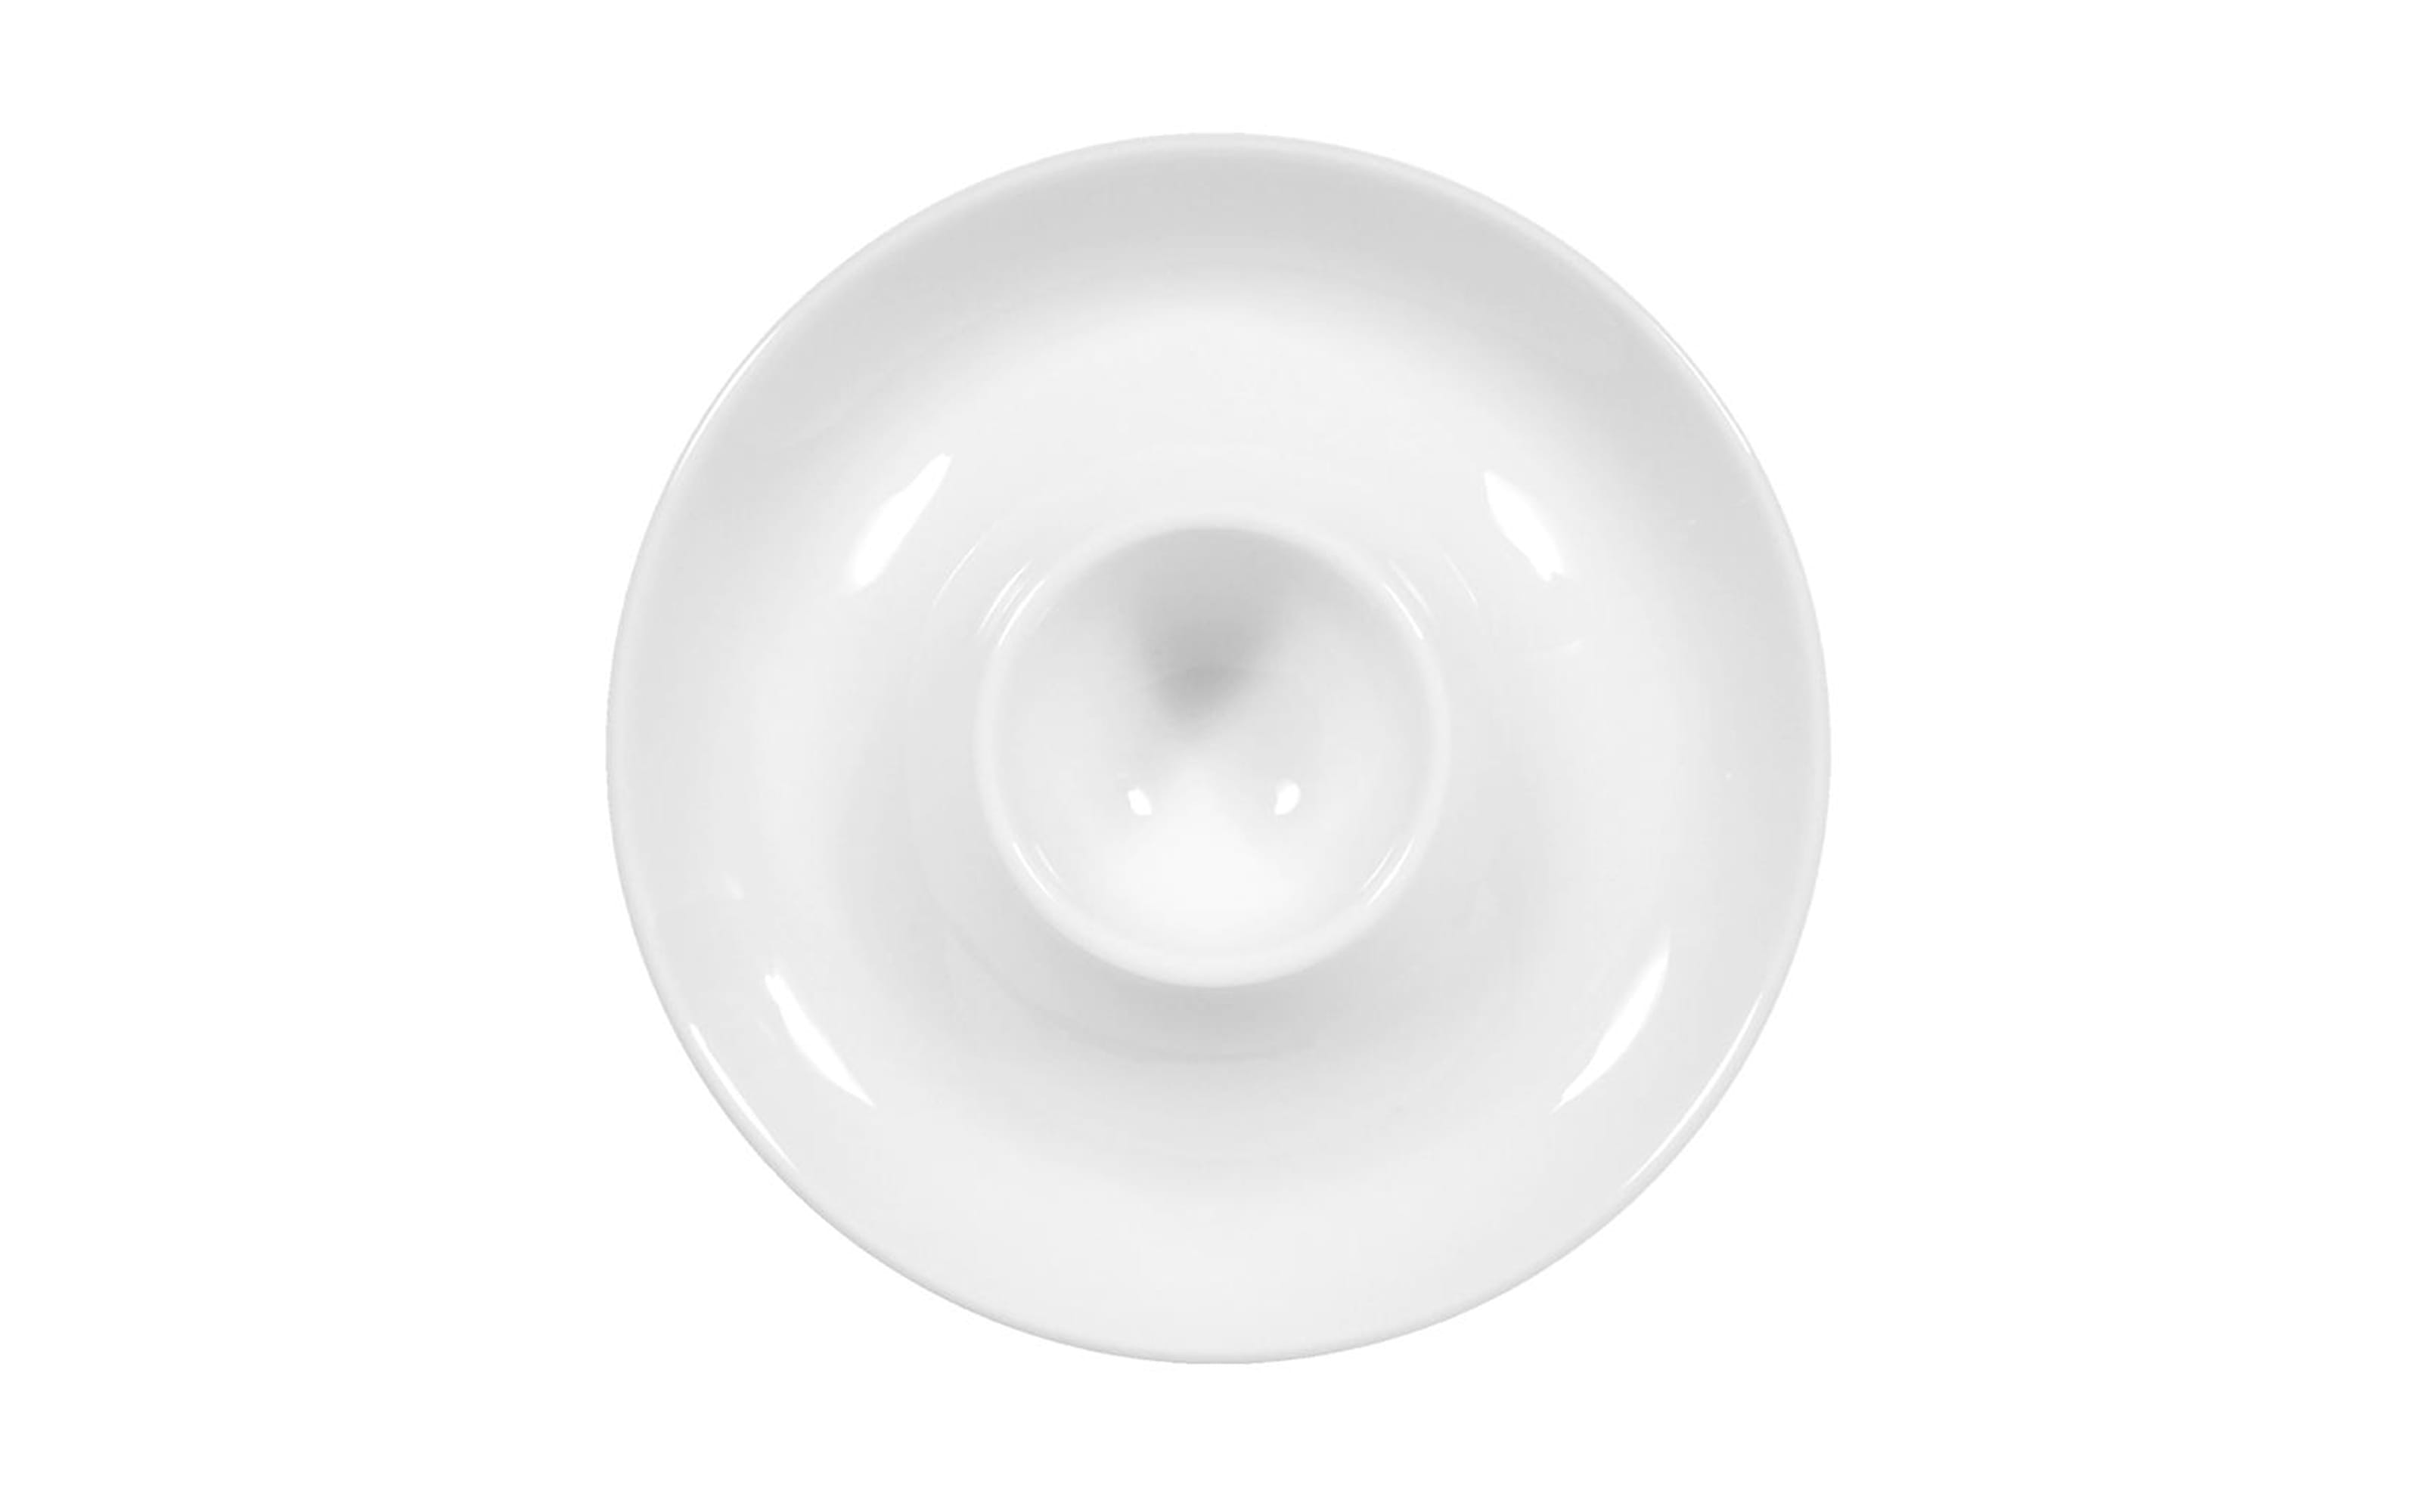 Eierbecher mit Ablage Rondo Liane in weiß, 13 cm